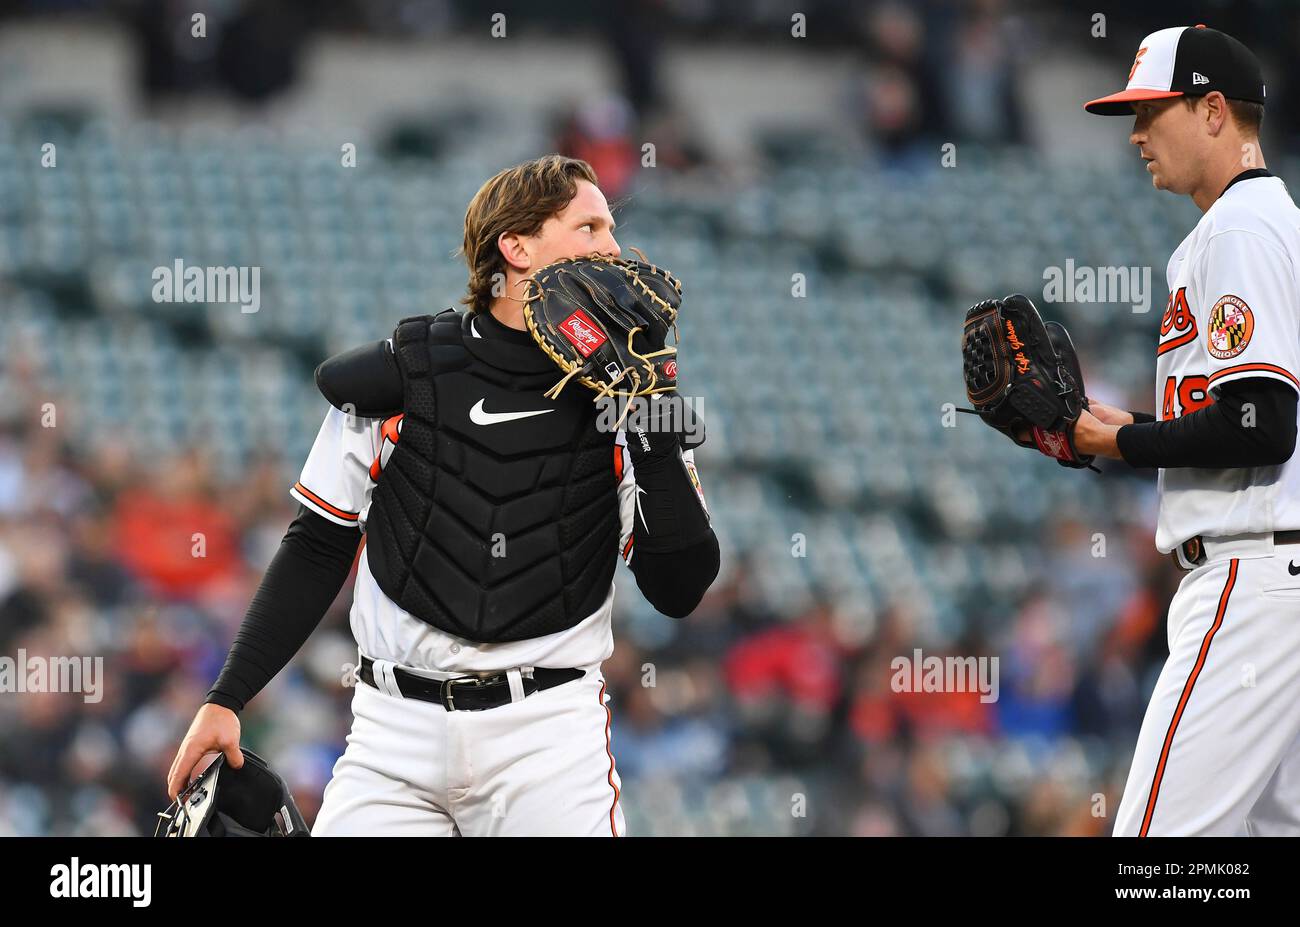 Download Adley Rutschman In Action On The Baseball Field Wallpaper